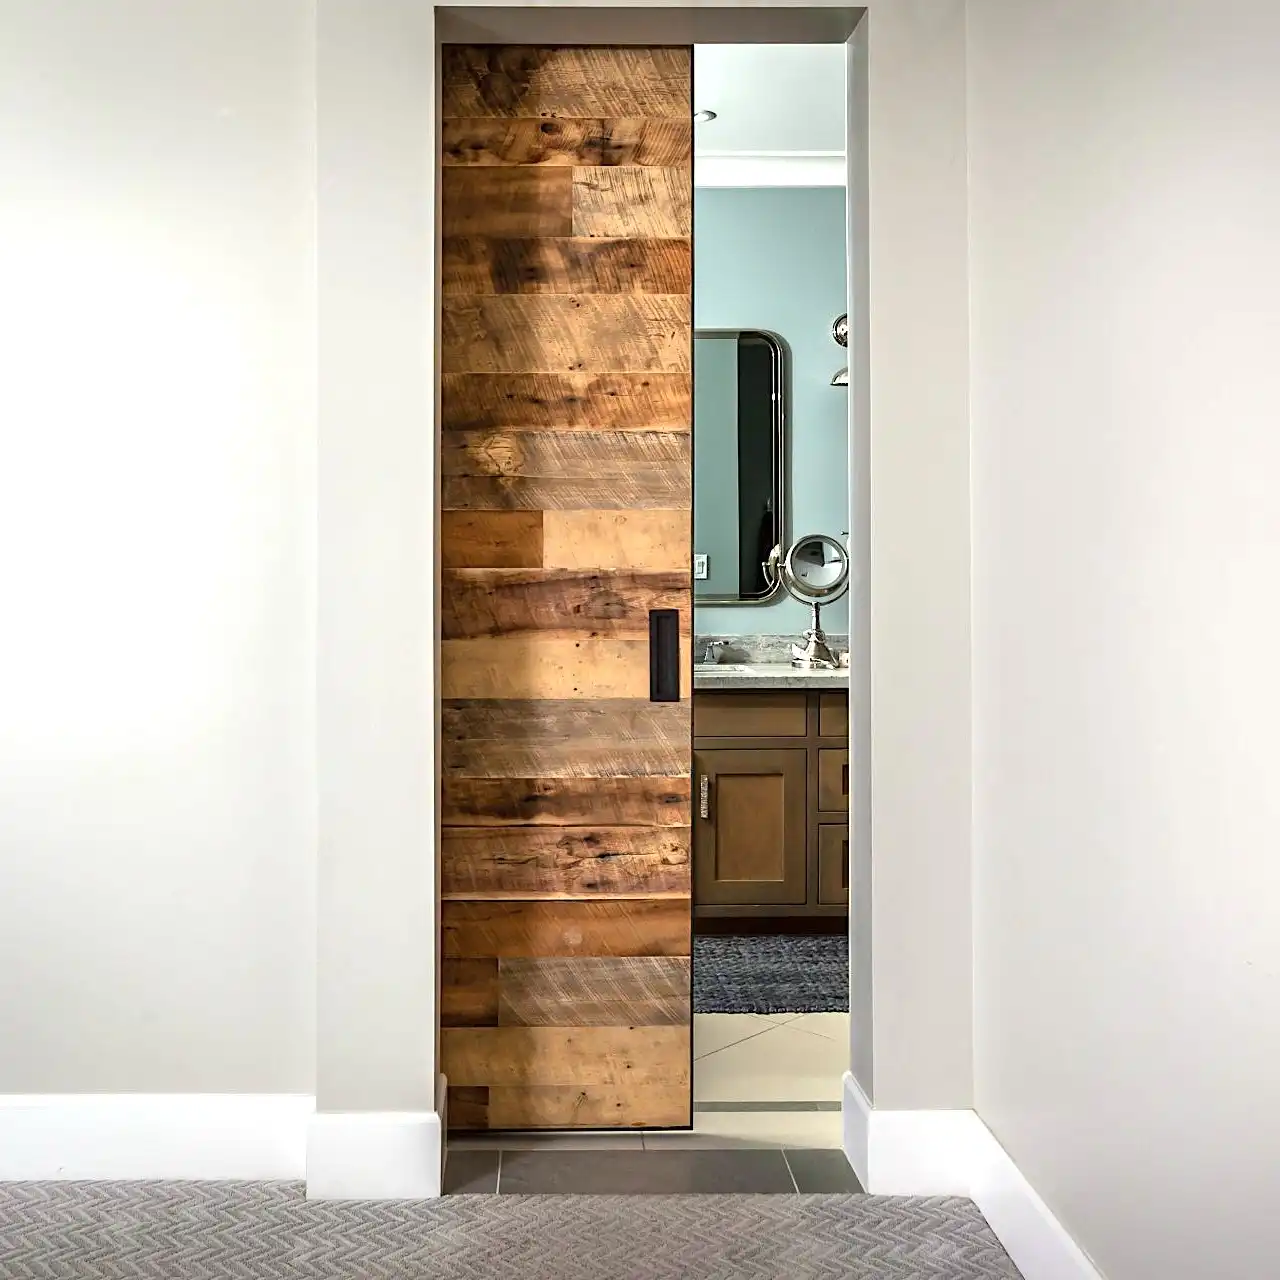  Une porte de grange en bois dans une salle de bains avec miroir. 